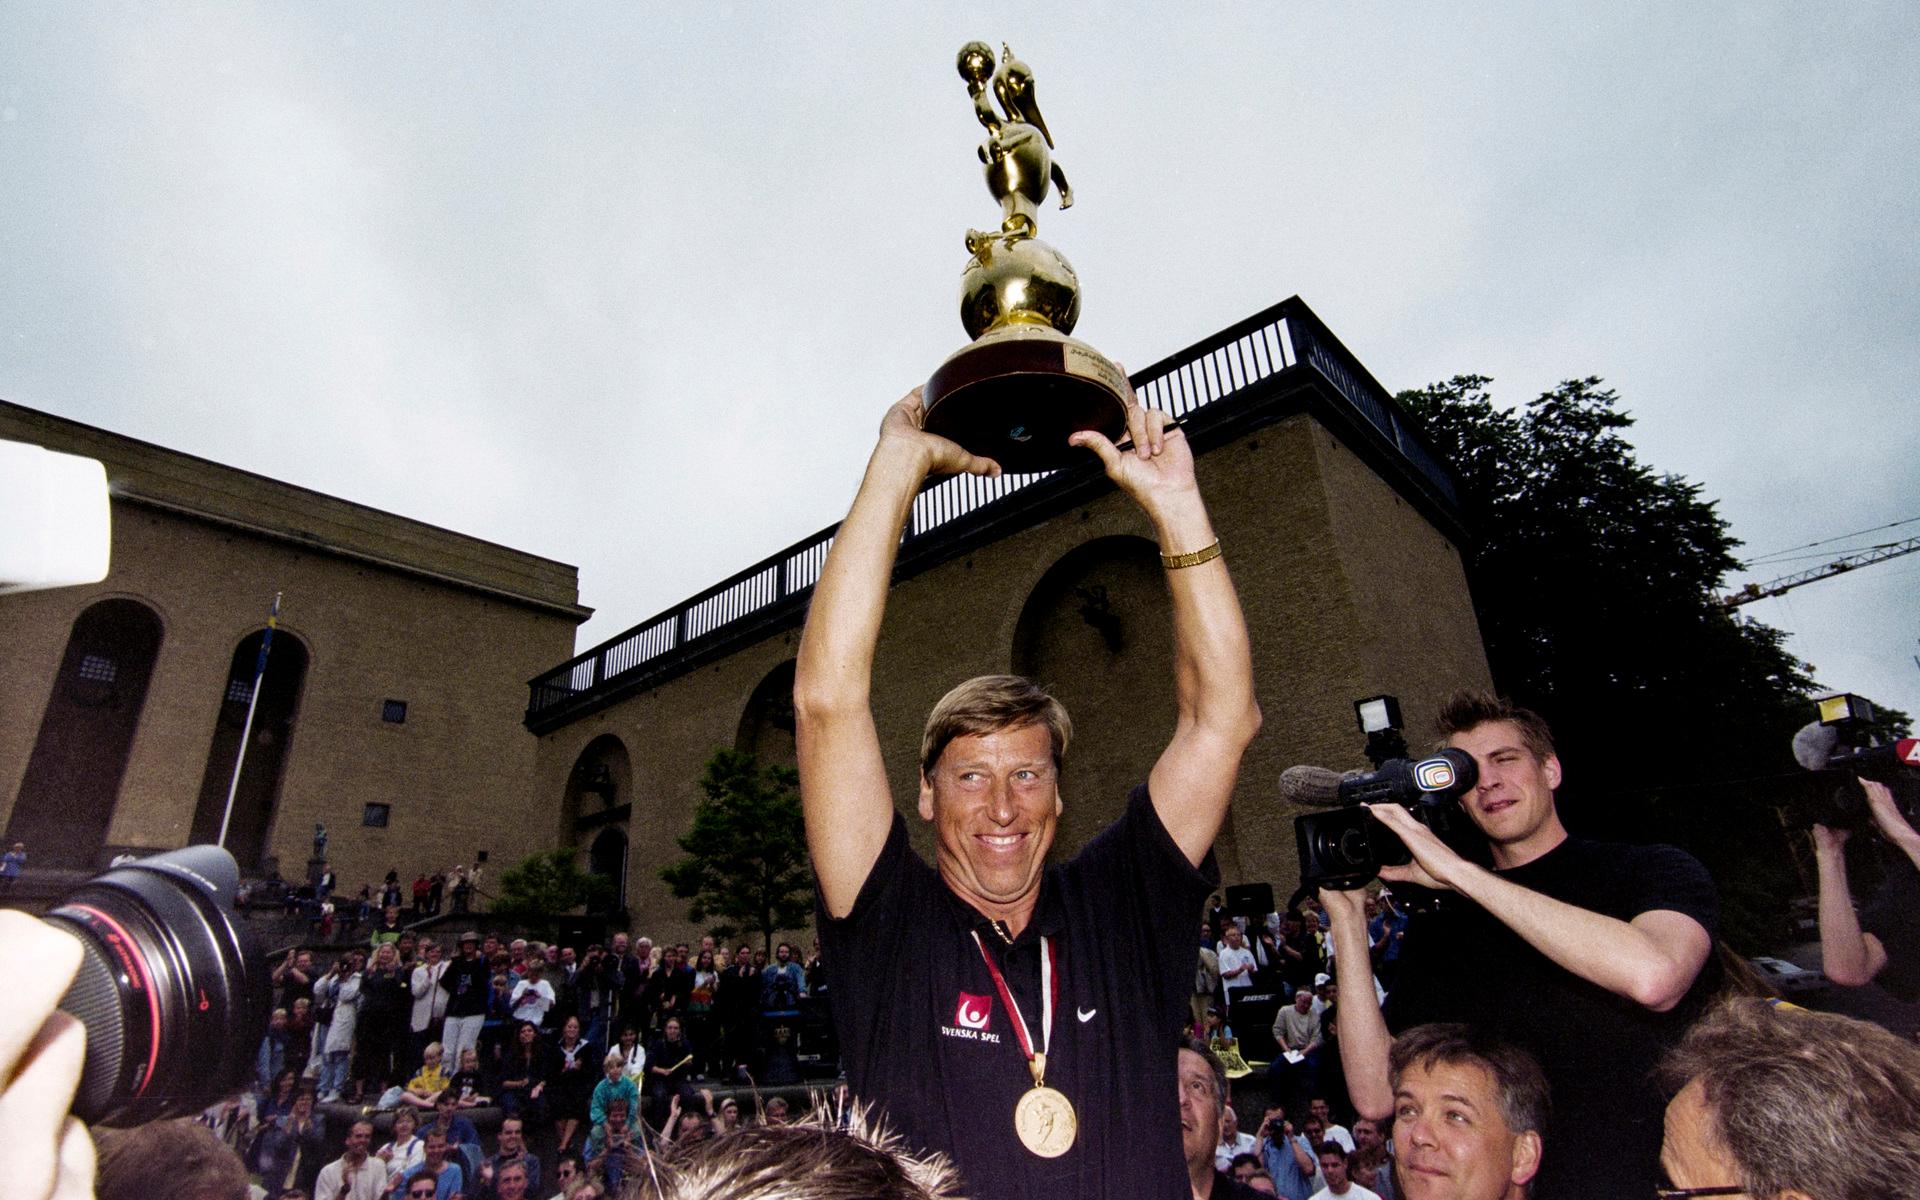 1999 tog Sverige hem VM, återigen ledda av Bengt Johansson.